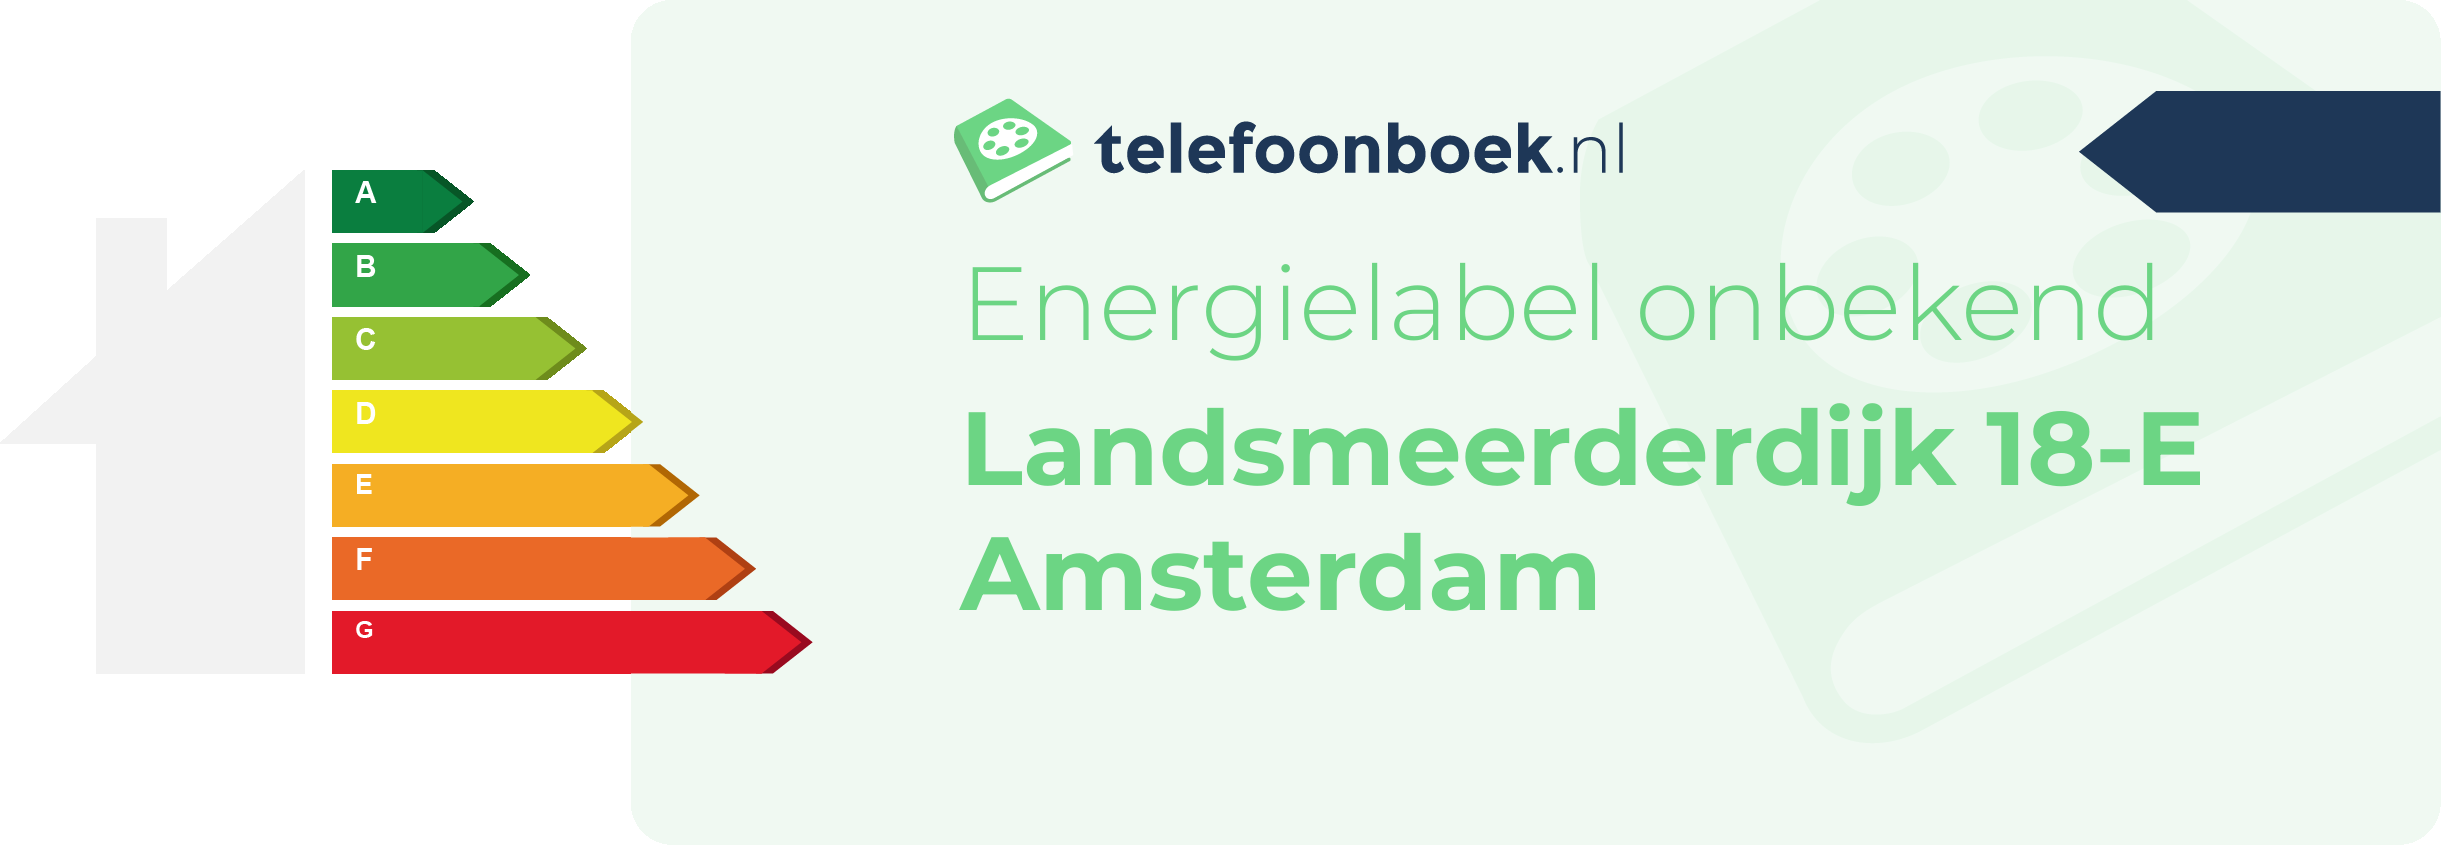 Energielabel Landsmeerderdijk 18-E Amsterdam